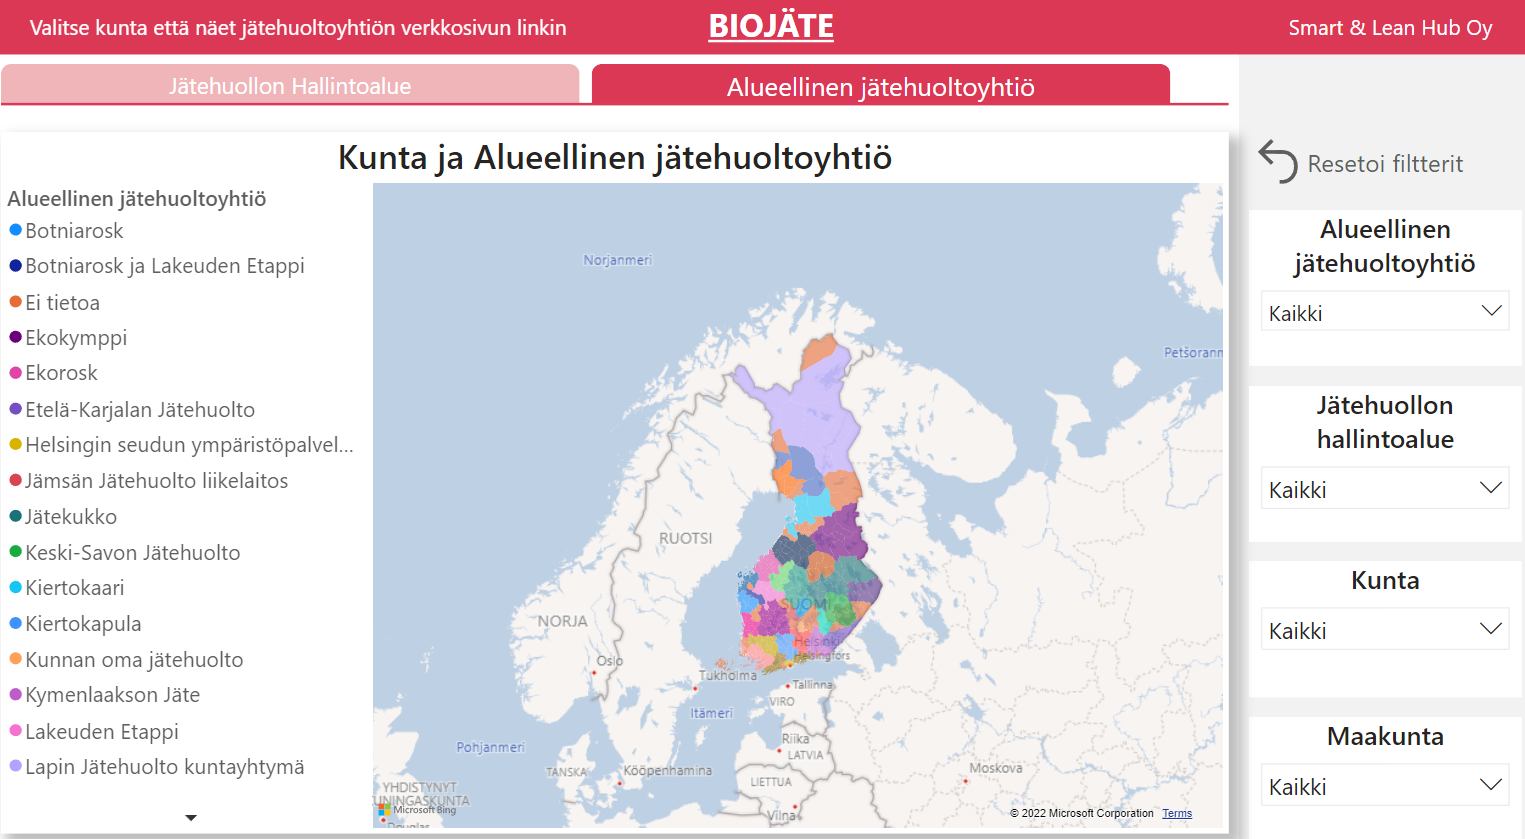 suomen-alueelliset-jatehuollot-visualisoituna